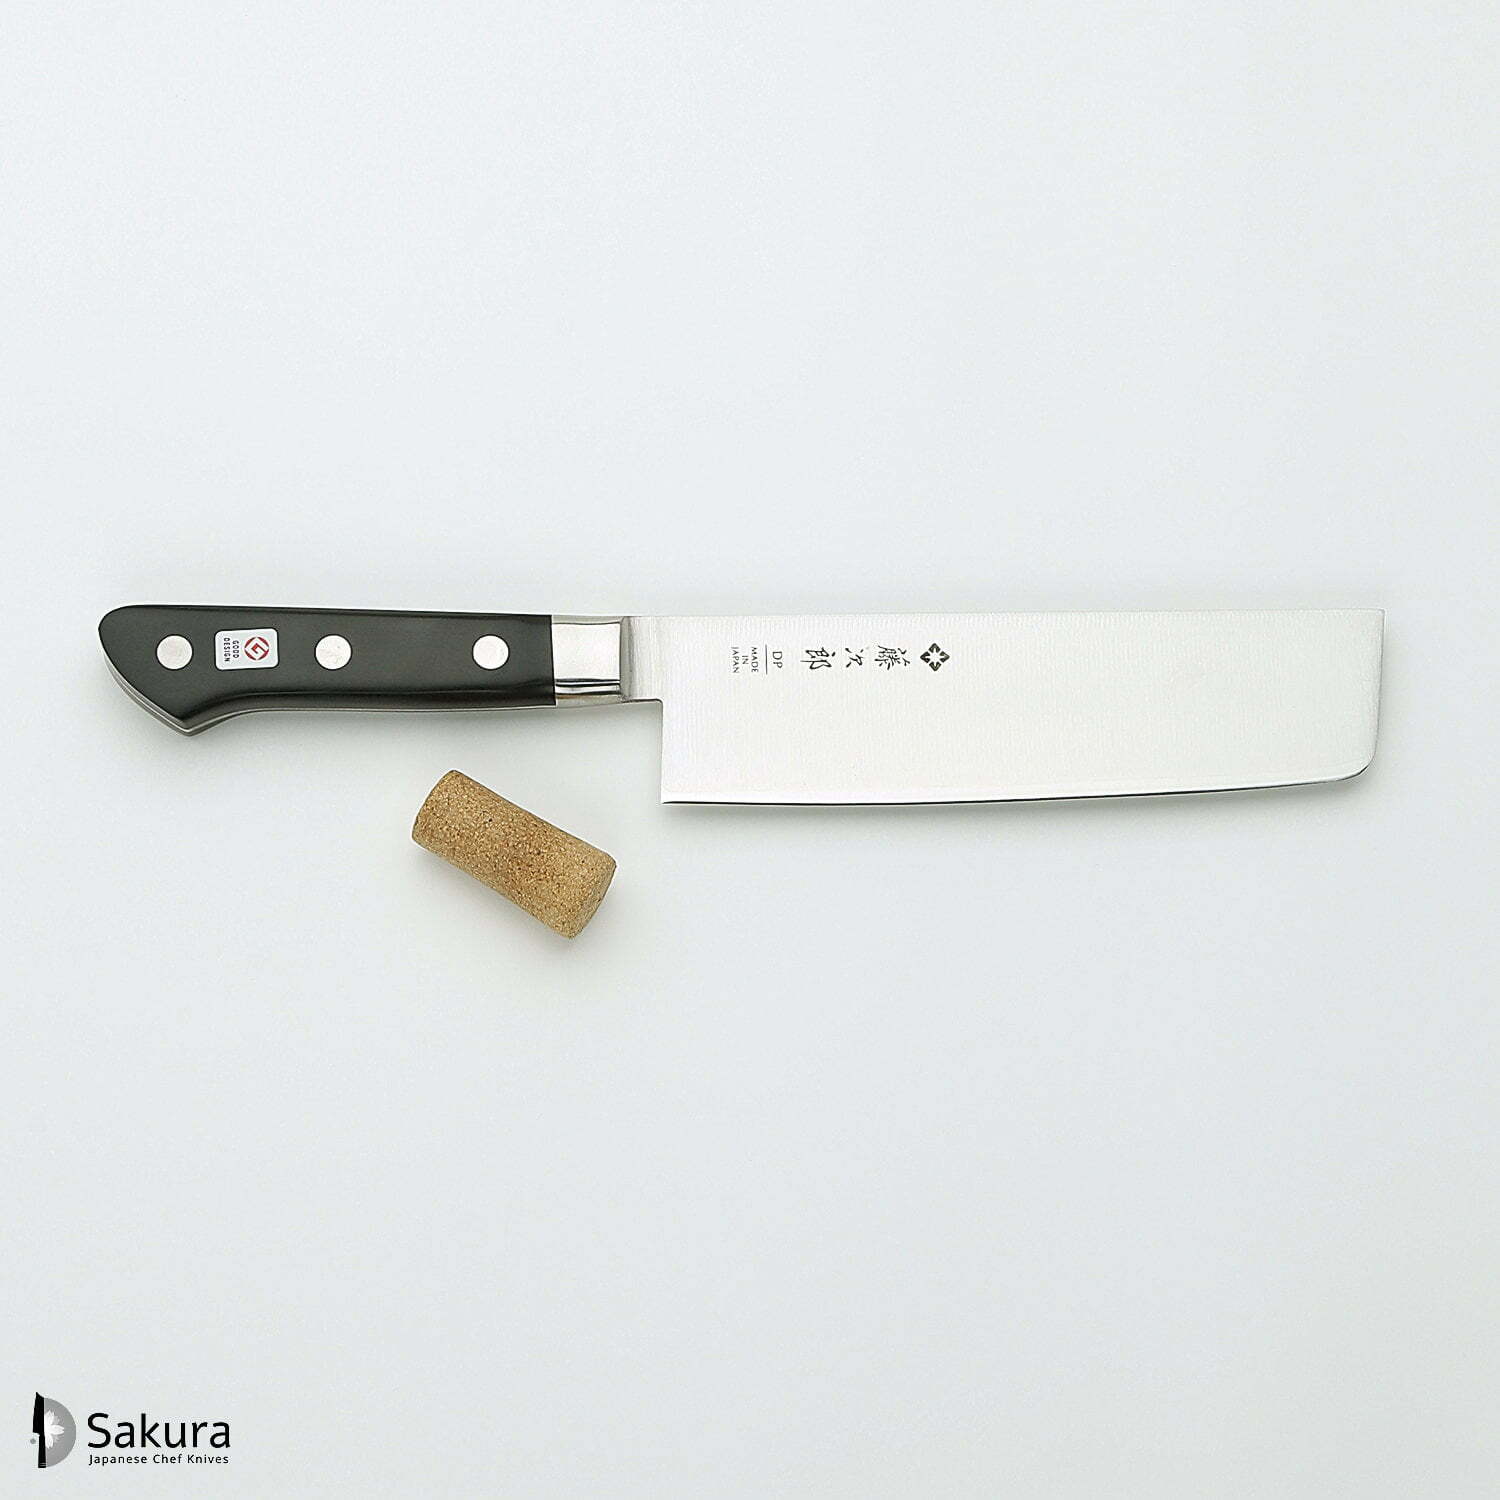 סכין ירקות נַקִירִי 165מ״מ מחוזקת 3 שכבות: פלדת פחמן יפנית VG-10 עטופה פלדת אל-חלד גימור מט מלוטש טוג׳ירו יפן